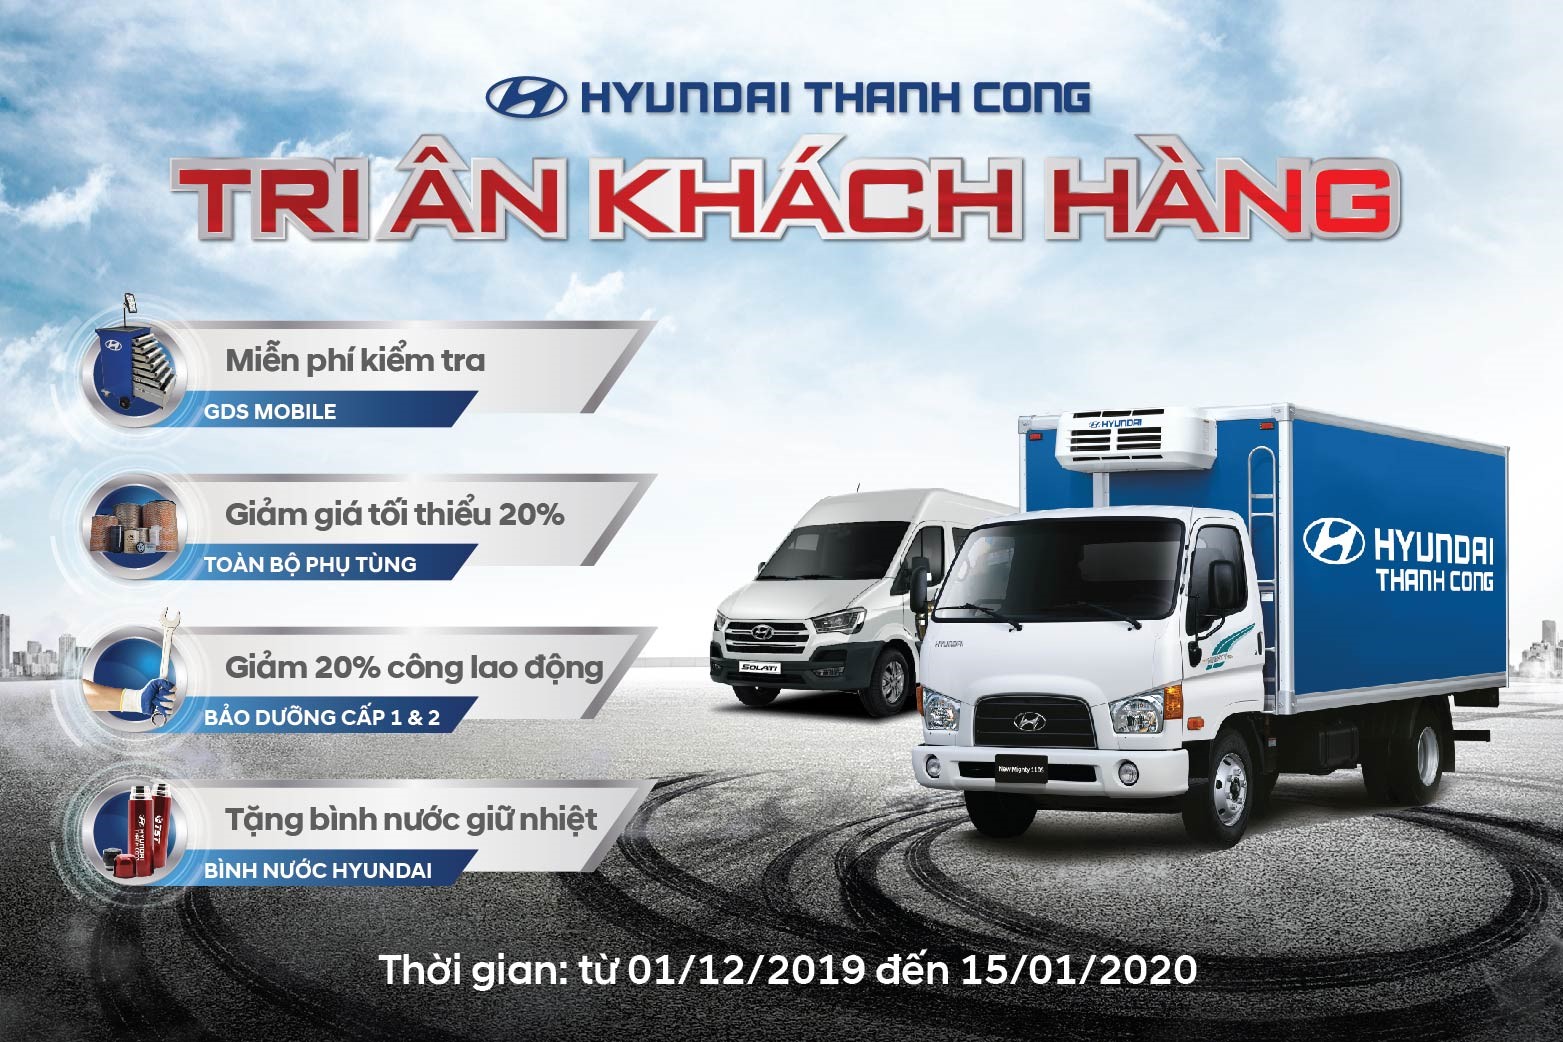 Hyundai Thành Công Thương Mại Tri ân khách hàng dịch vụ cuối năm 2019